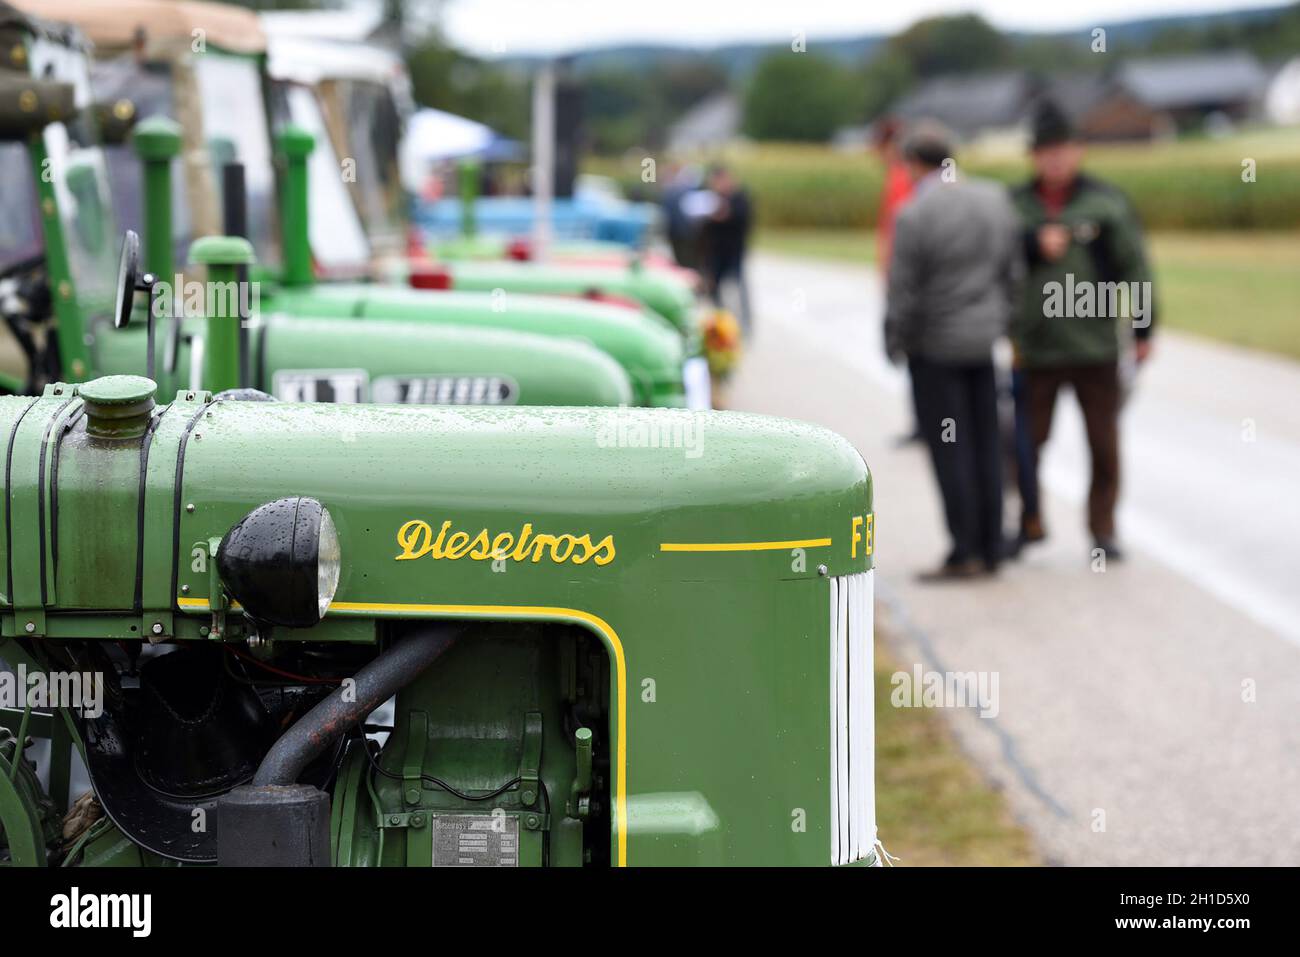 Oldtimer-Traktor-Treffen in Desselbrunn (Bezirk Vöcklabruck, Oberösterreich) - hier sind jedes Jahr im Sommer weit über 100 alte Traktoren zu bewunder Foto Stock